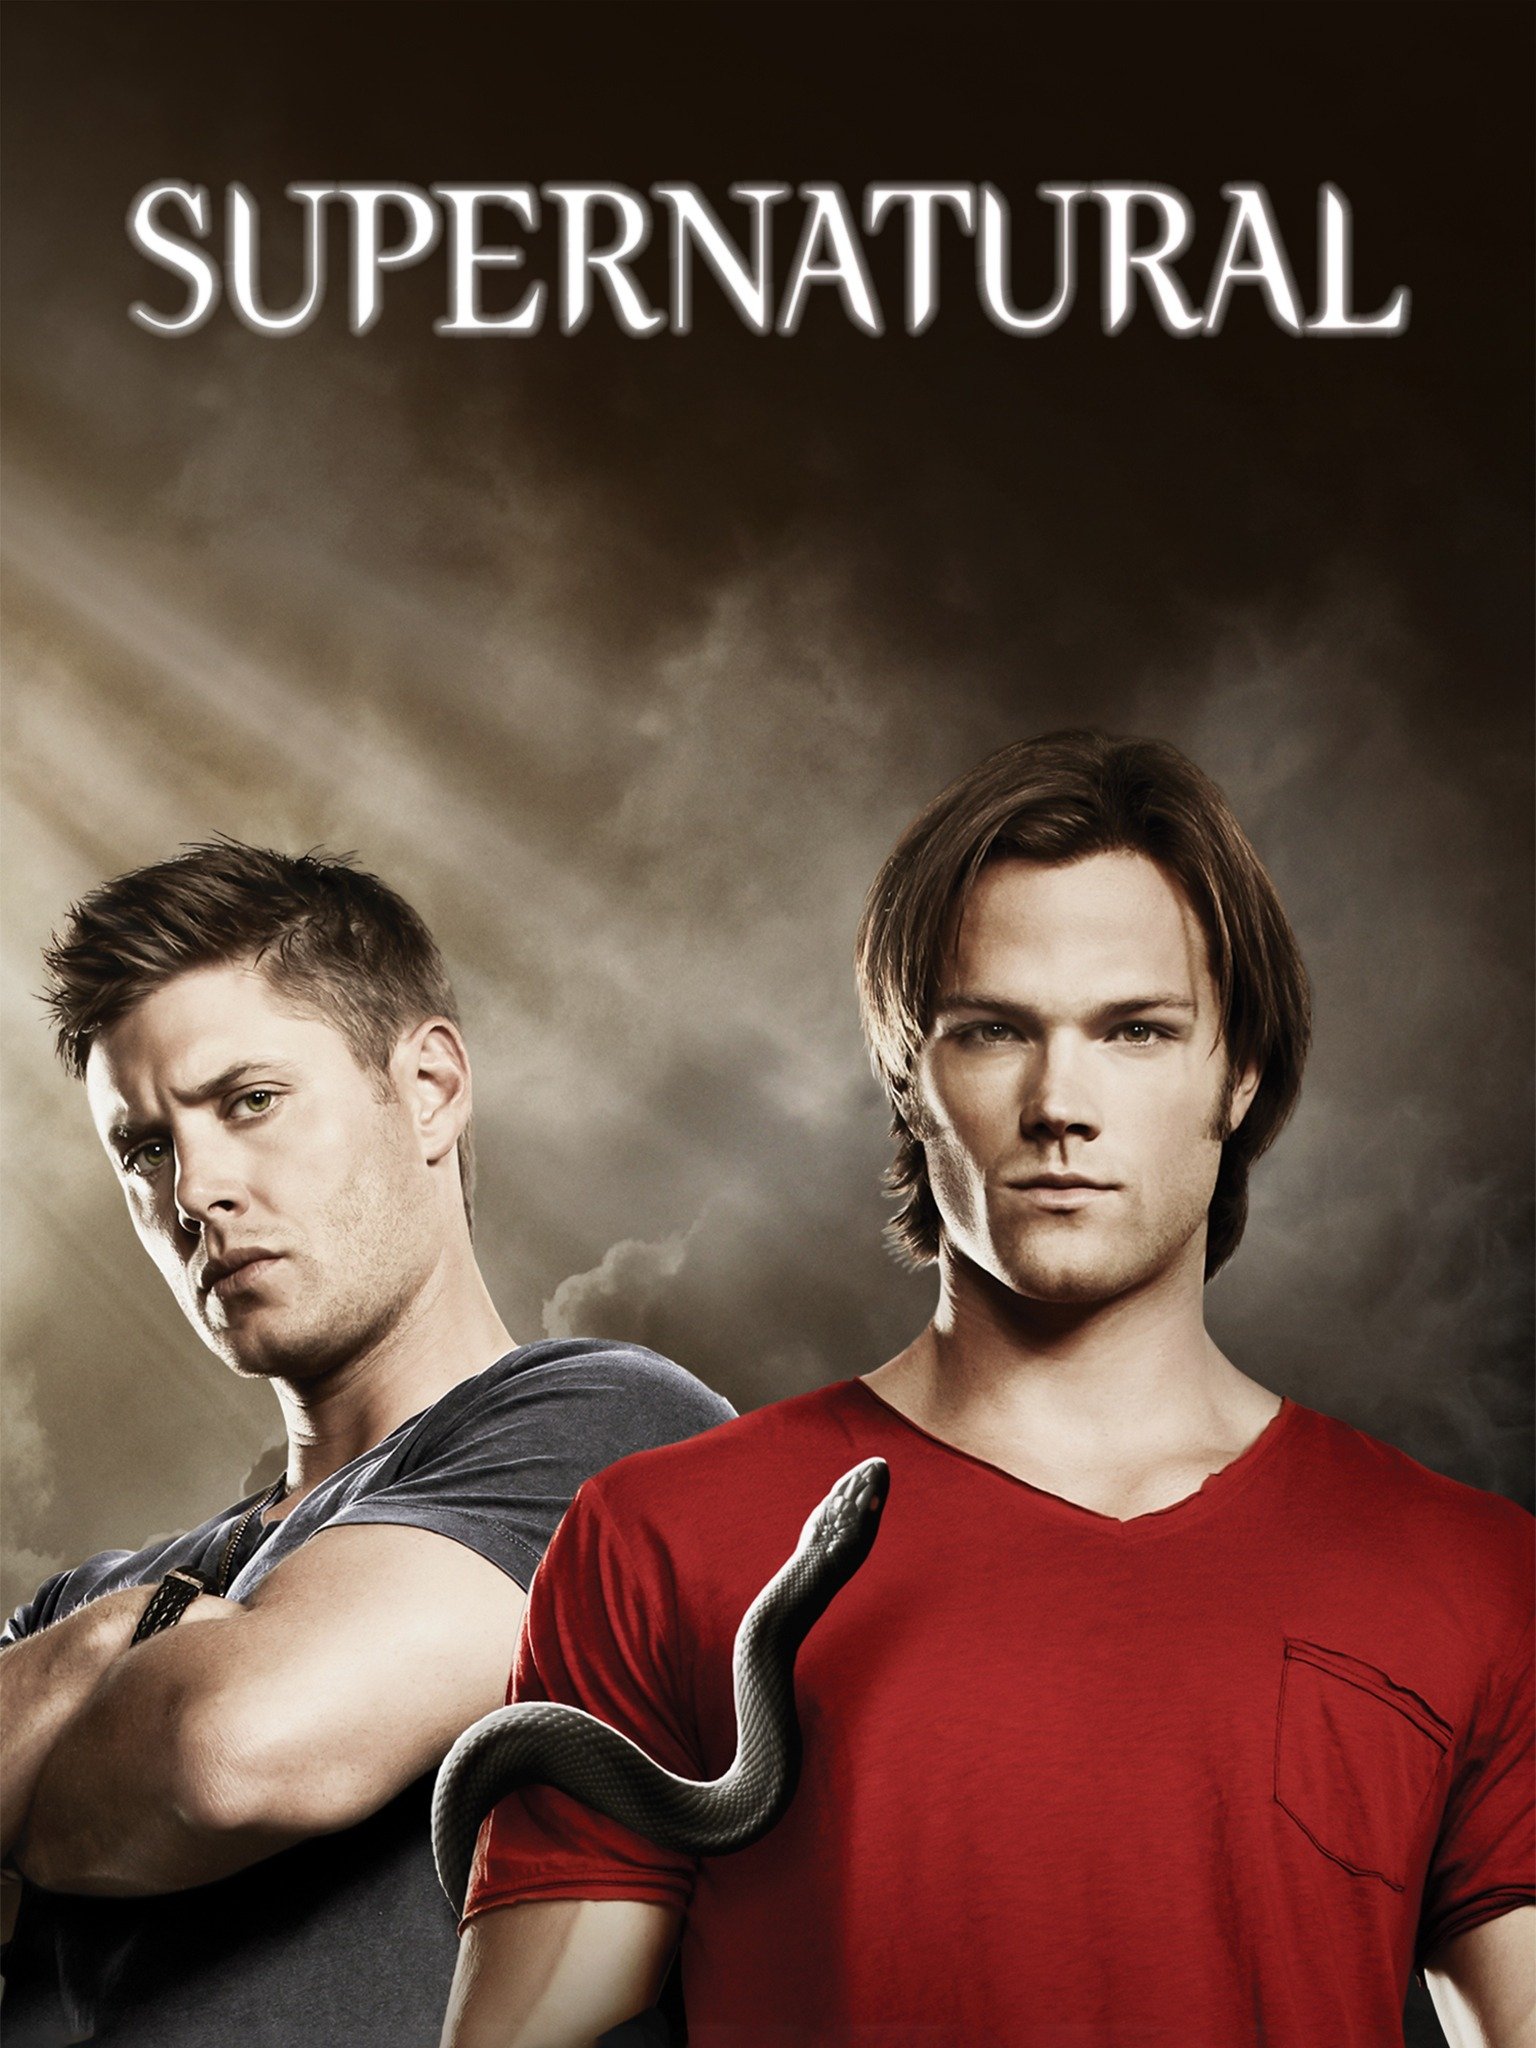 ดูหนังออนไลน์ฟรี Supernatural Season 6 EP.10 ล่าปริศนาเหนือโลก ซีซั่น 6 ตอนที่ 10(ซับไทย)